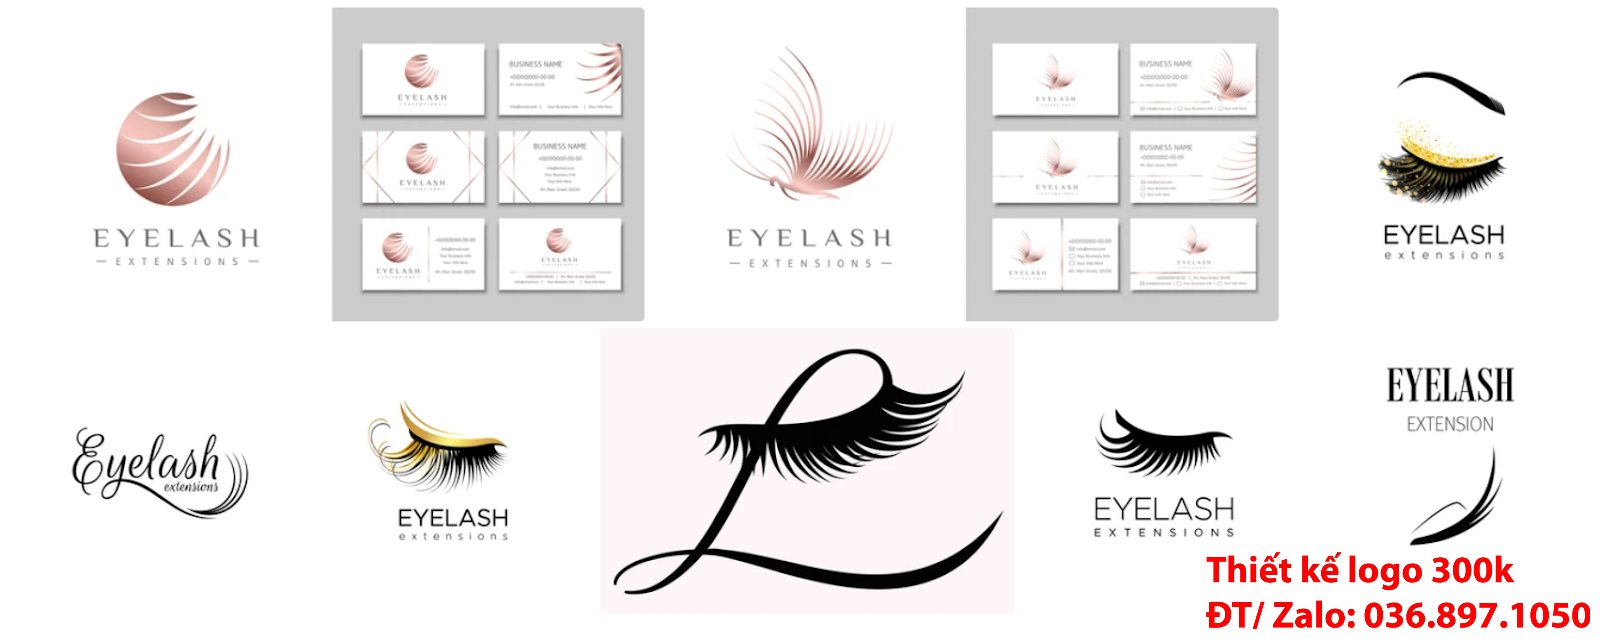 thiết kế logo thẩm mỹ lông mi mắt đẹp online chuyên nghiệp chất lượng 500k